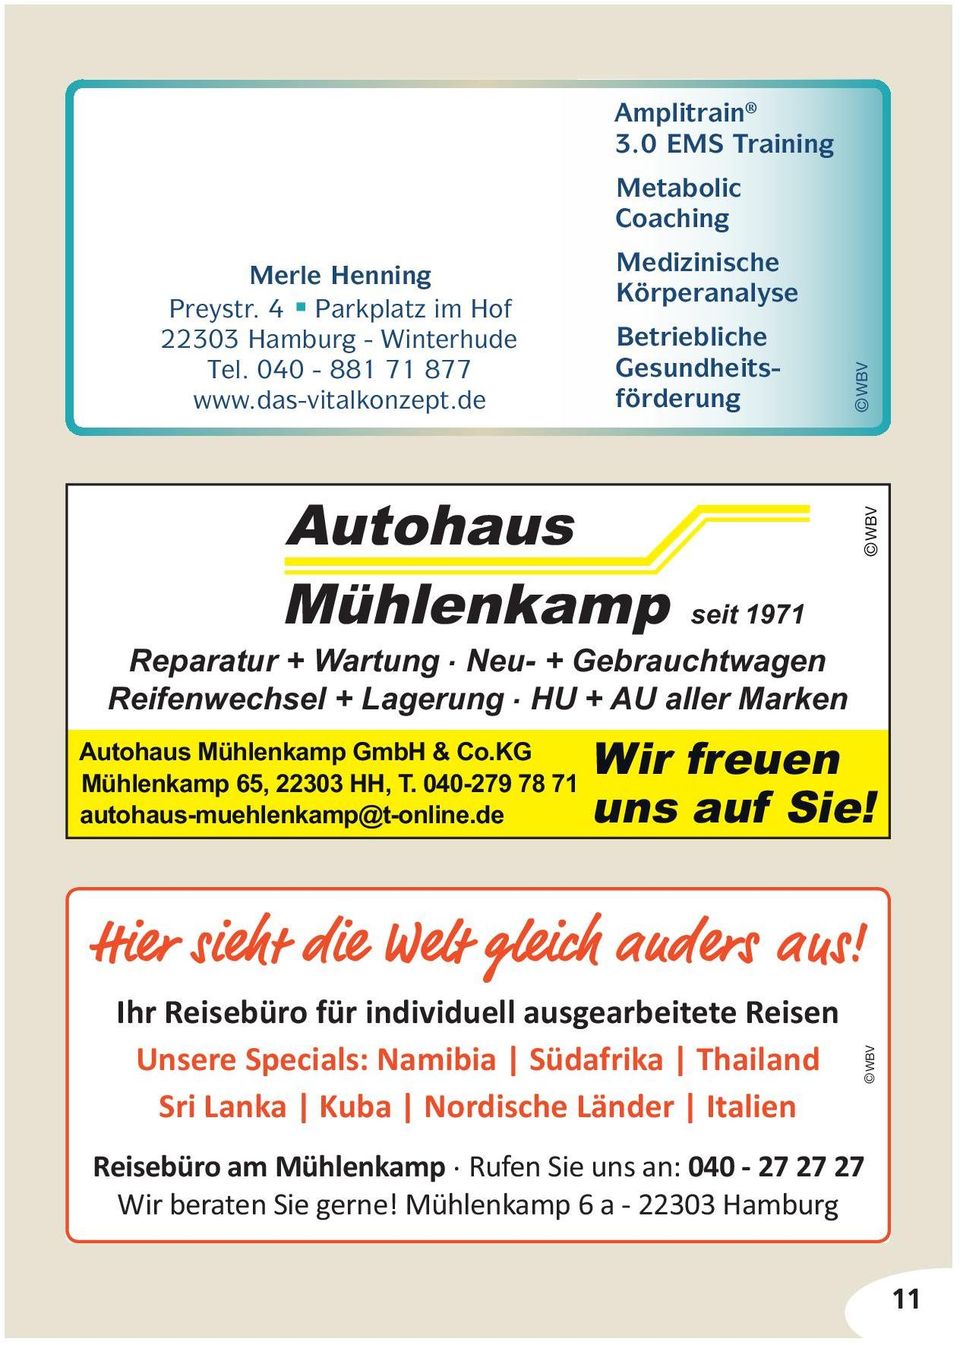 Neu- + Gebrauchtwagen Reifenwechsel + Lagerung. HU + AU aller Marken Autohaus Mühlenkamp GmbH & Co.KG Mühlenkamp 65, 22303 HH, T. 040-279 78 71 autohaus-muehlenkamp@t-online.